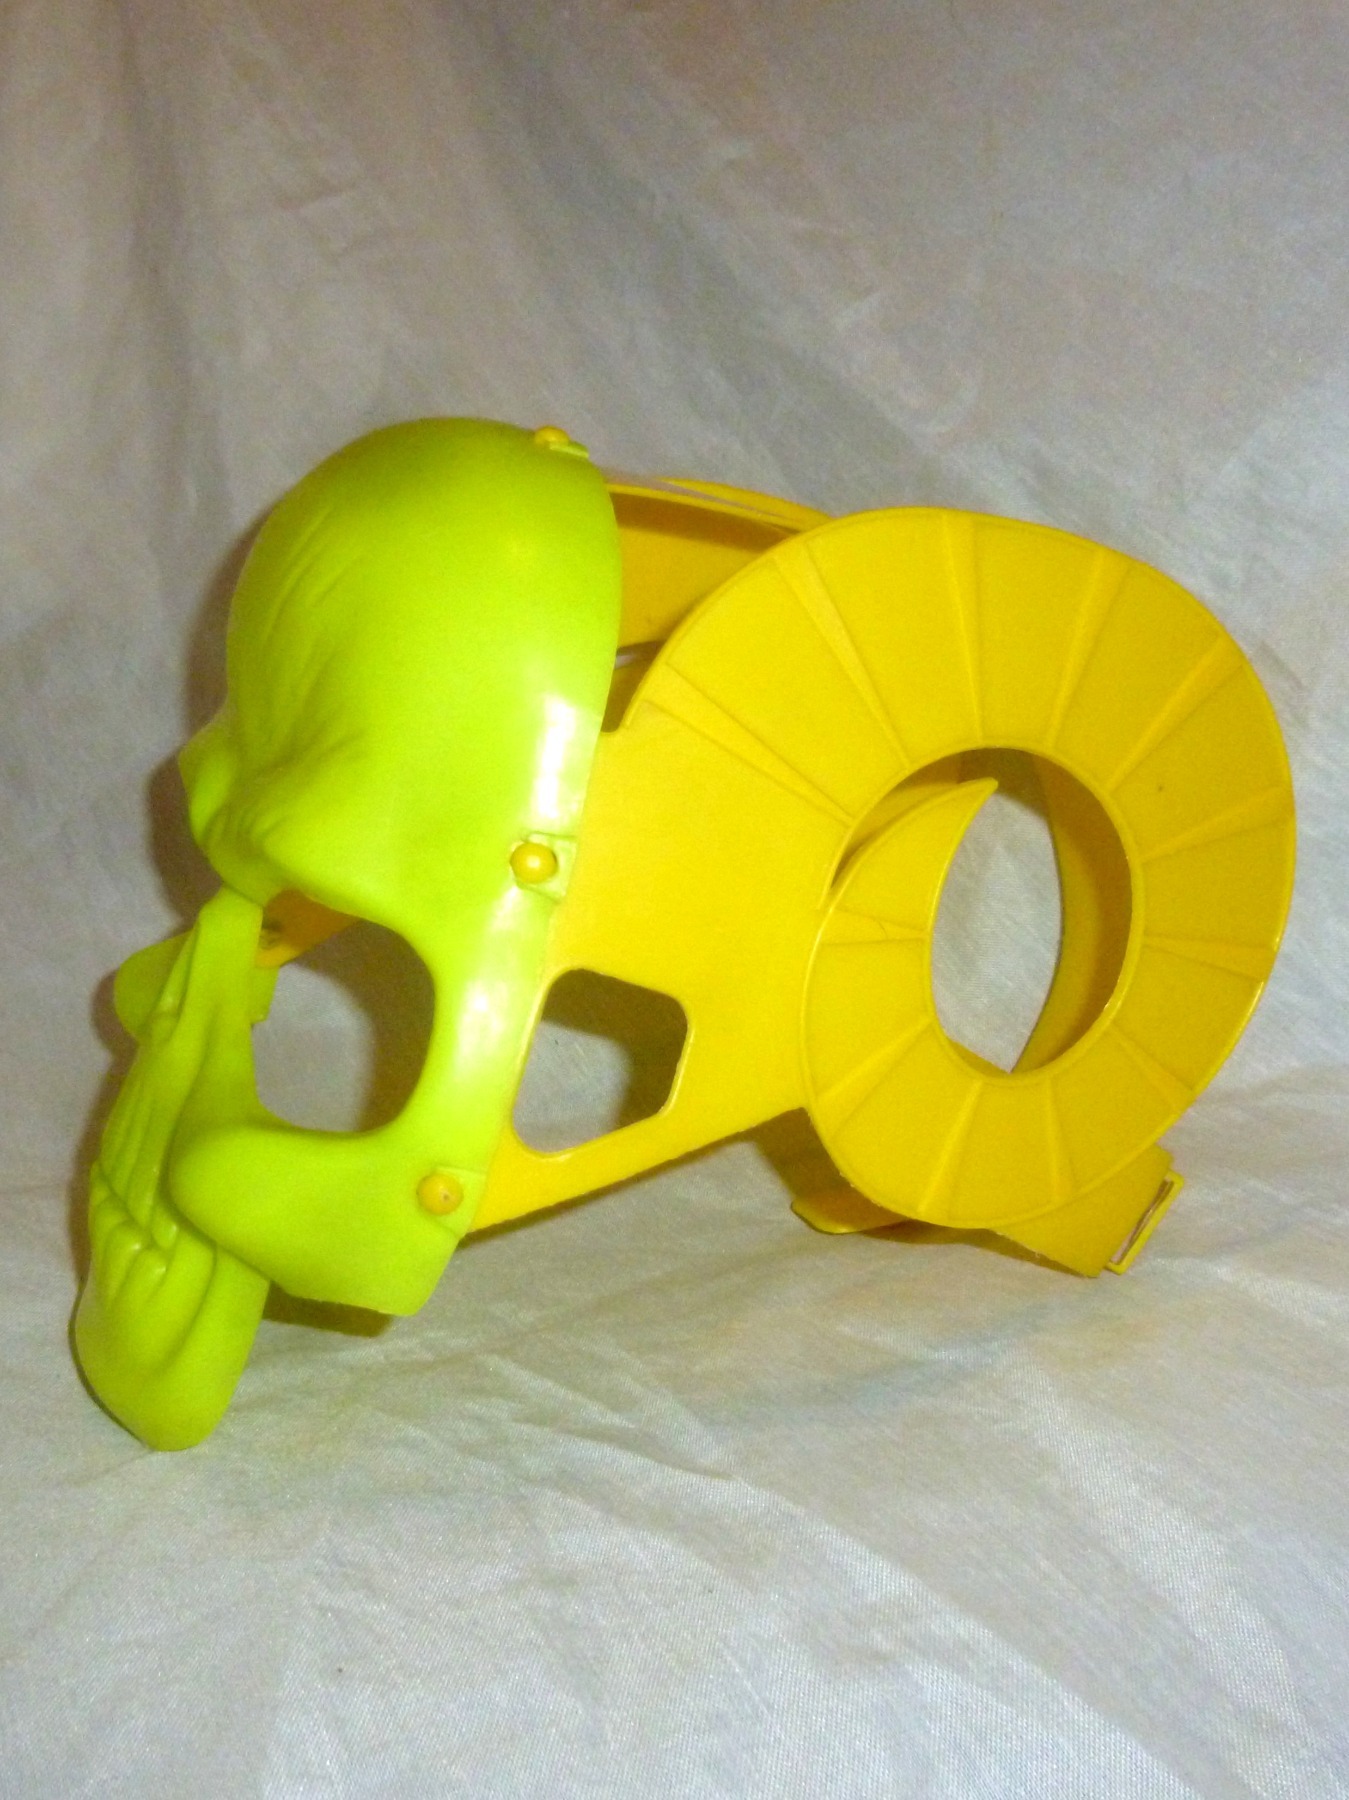 Skeletor mask / helmet 2